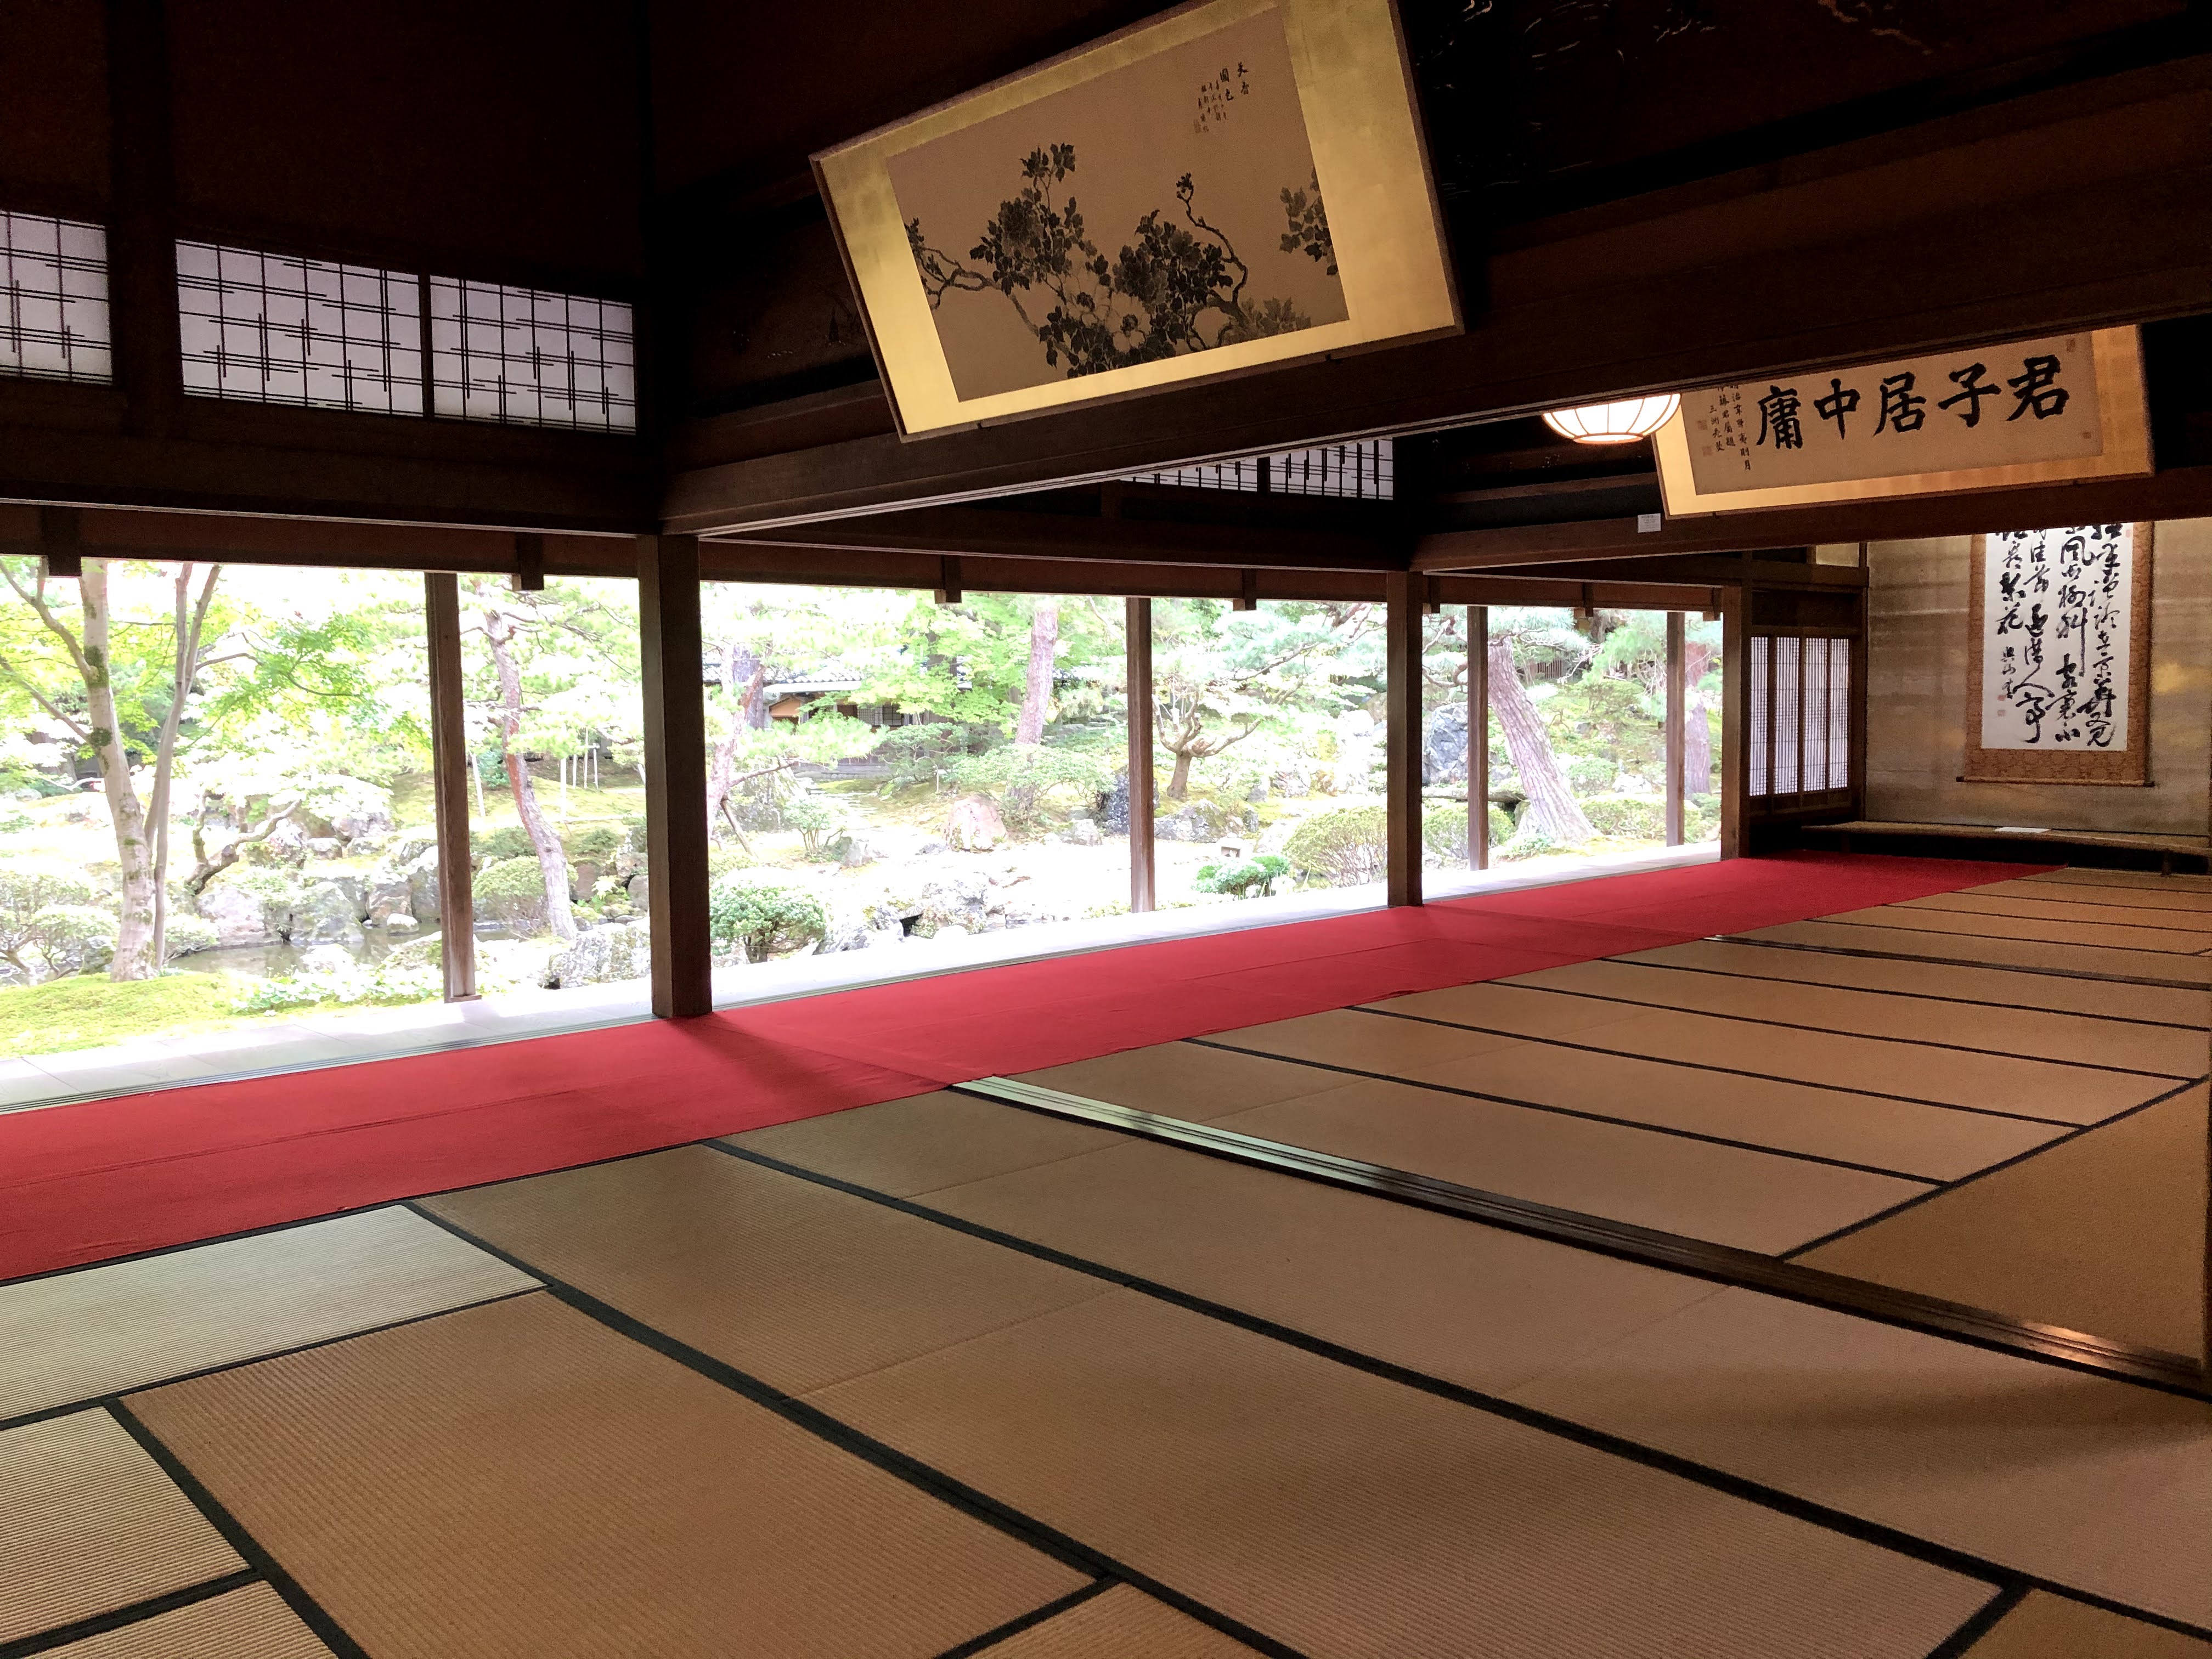 新潟の庭園街道をめぐる豪農の館、伊藤家の歴史を伝える北方文化博物館